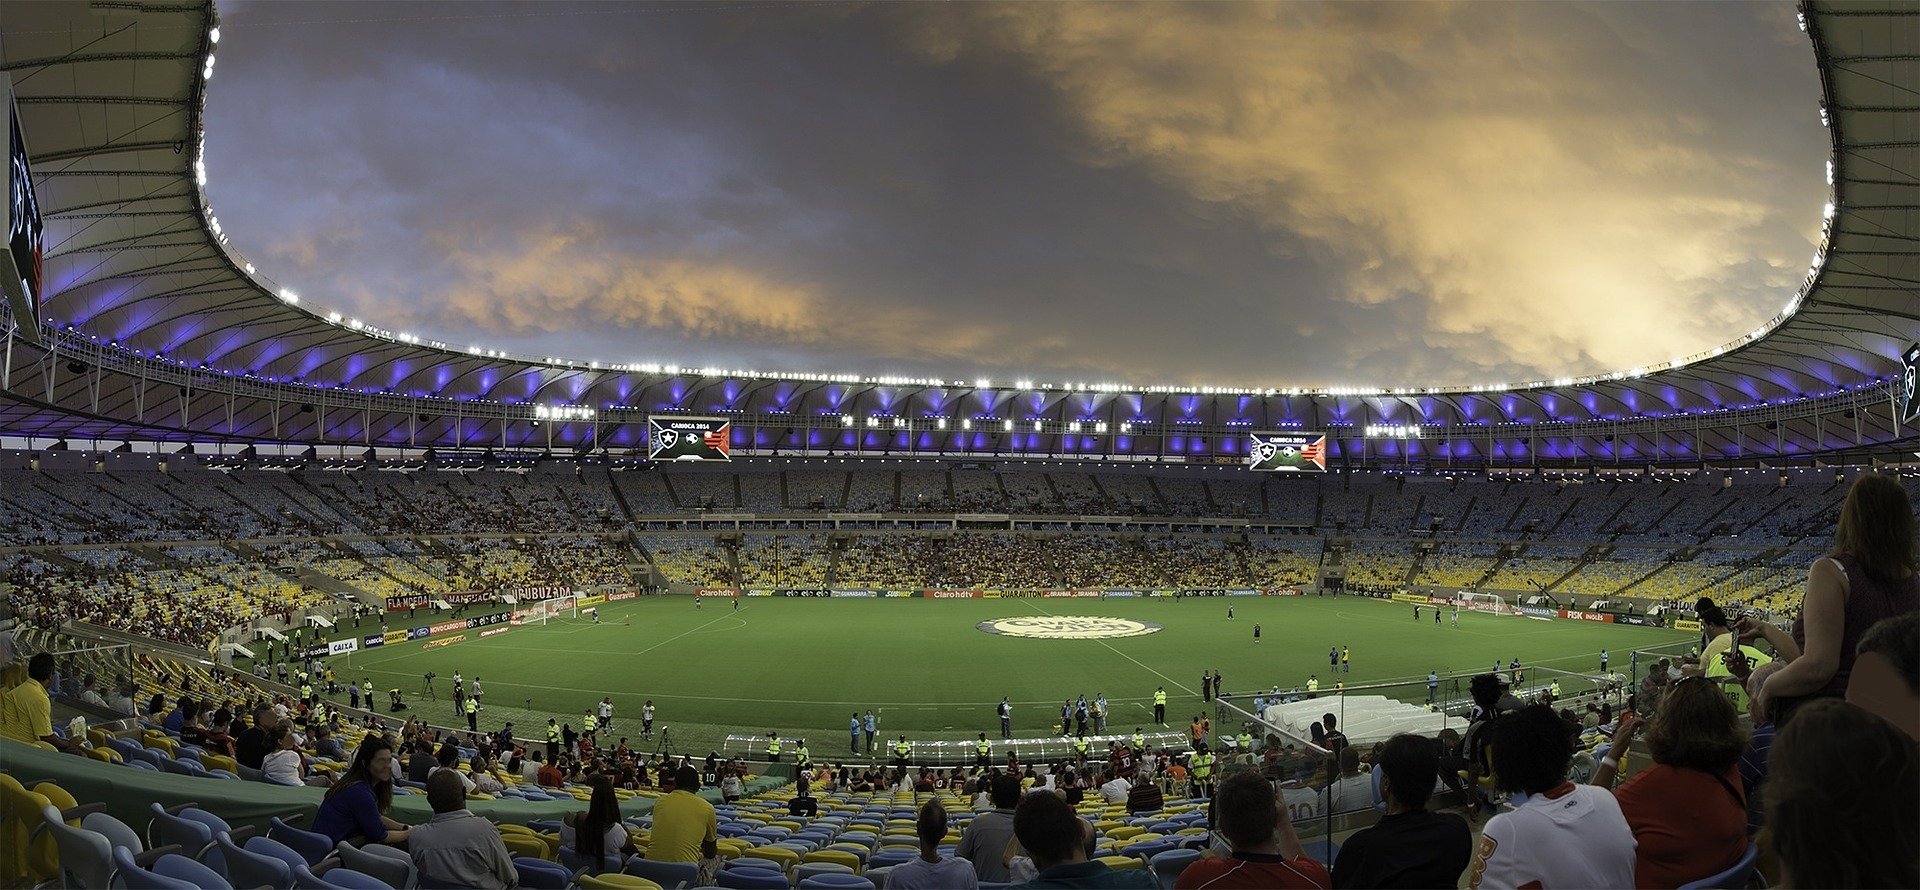 O Campeonato Carioca de futebol é um dos campeonatos estaduais mais antigos do Brasil. Confira quais são os maiores campeões cariocas.